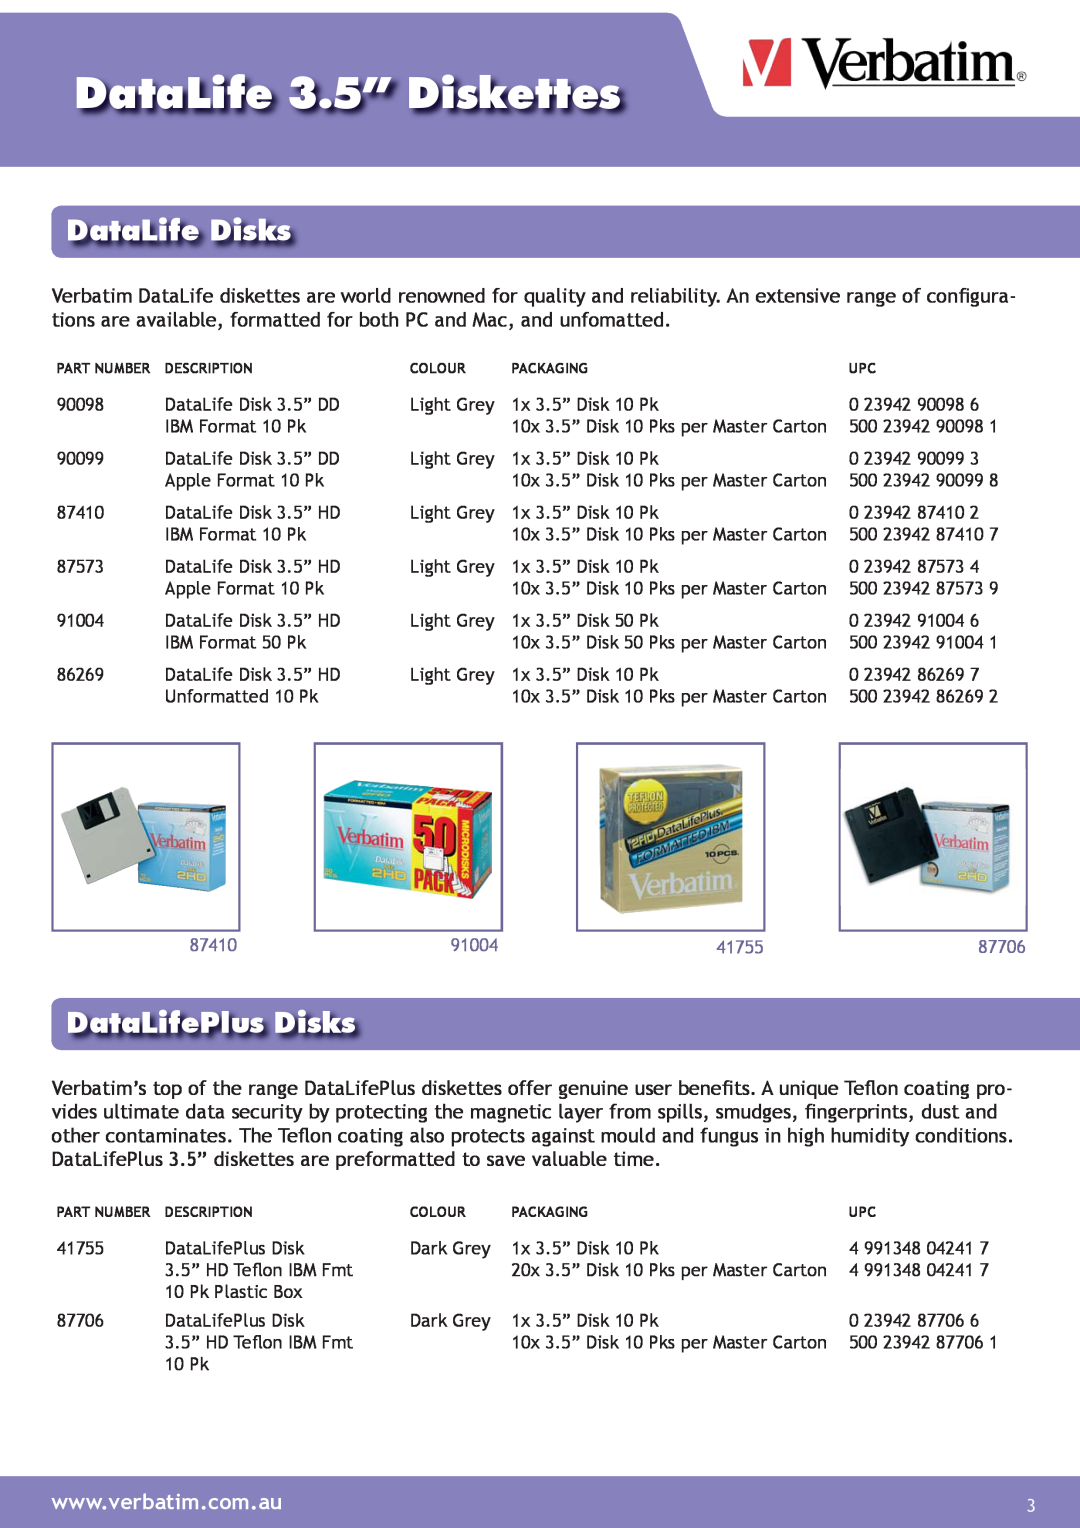 Verbatim Datalife 3.5" Diskette manual DataLife Disks, DataLifePlus Disks, DataLife 3.5” Diskettes 